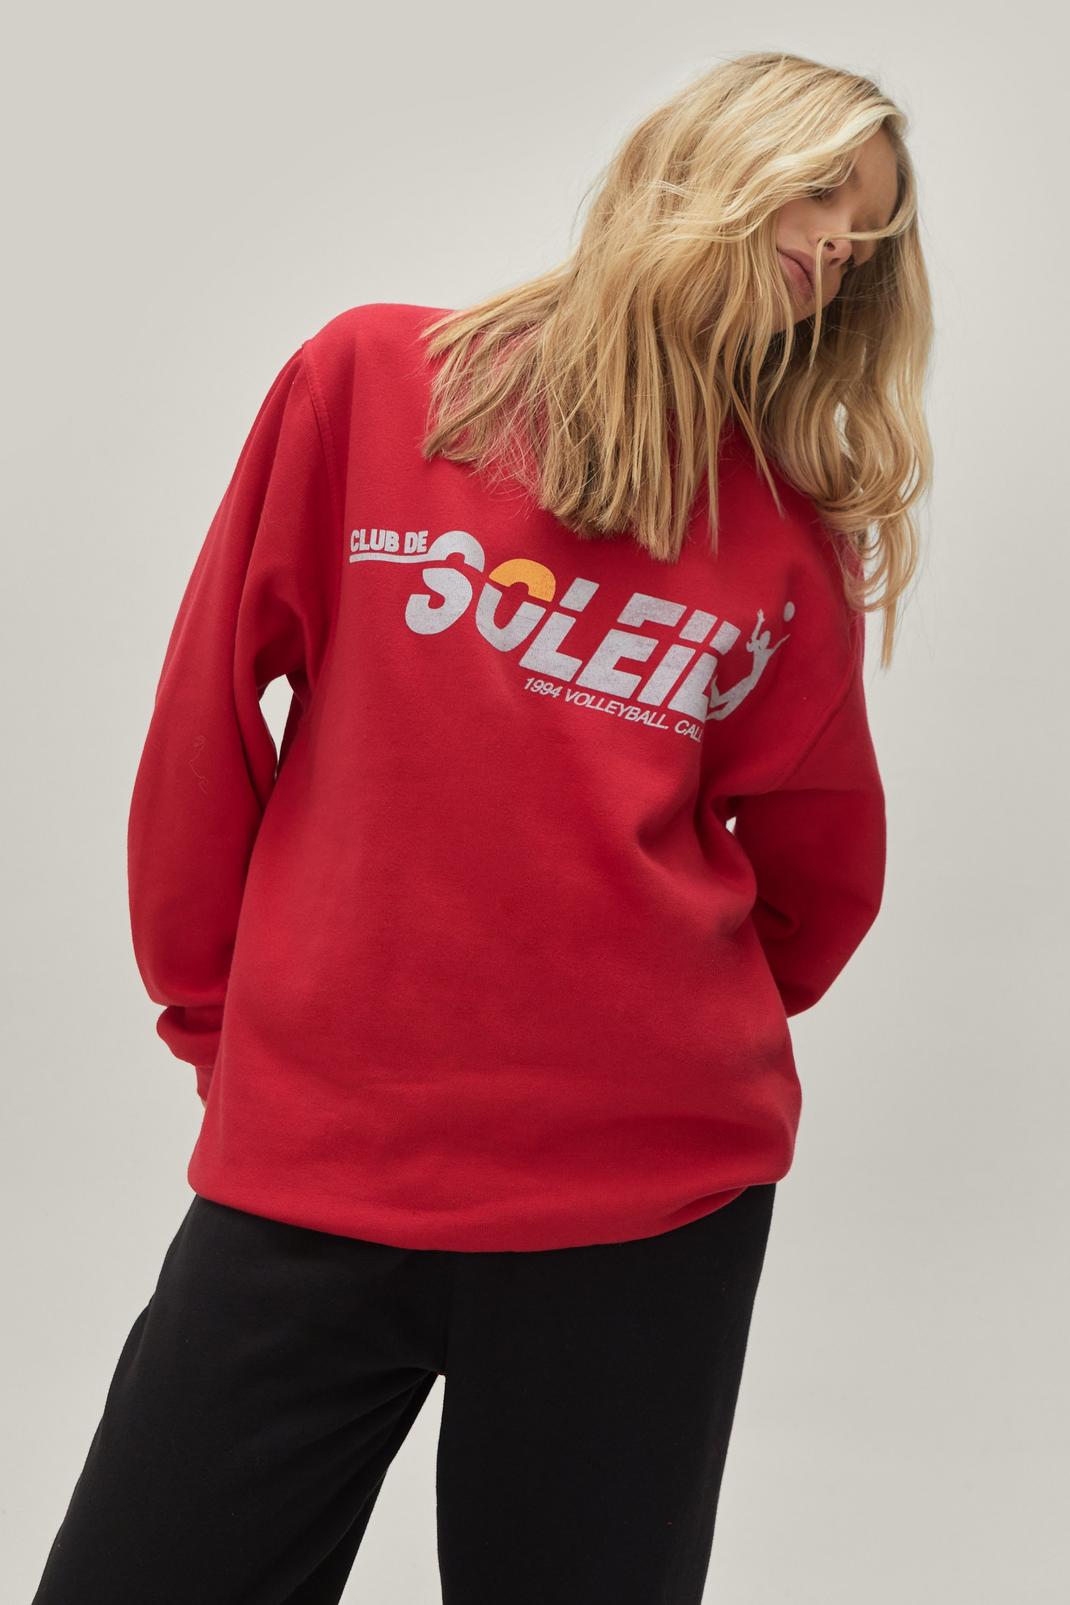 Club De Soleil Graphic Oversized Sweatshirt image number 1